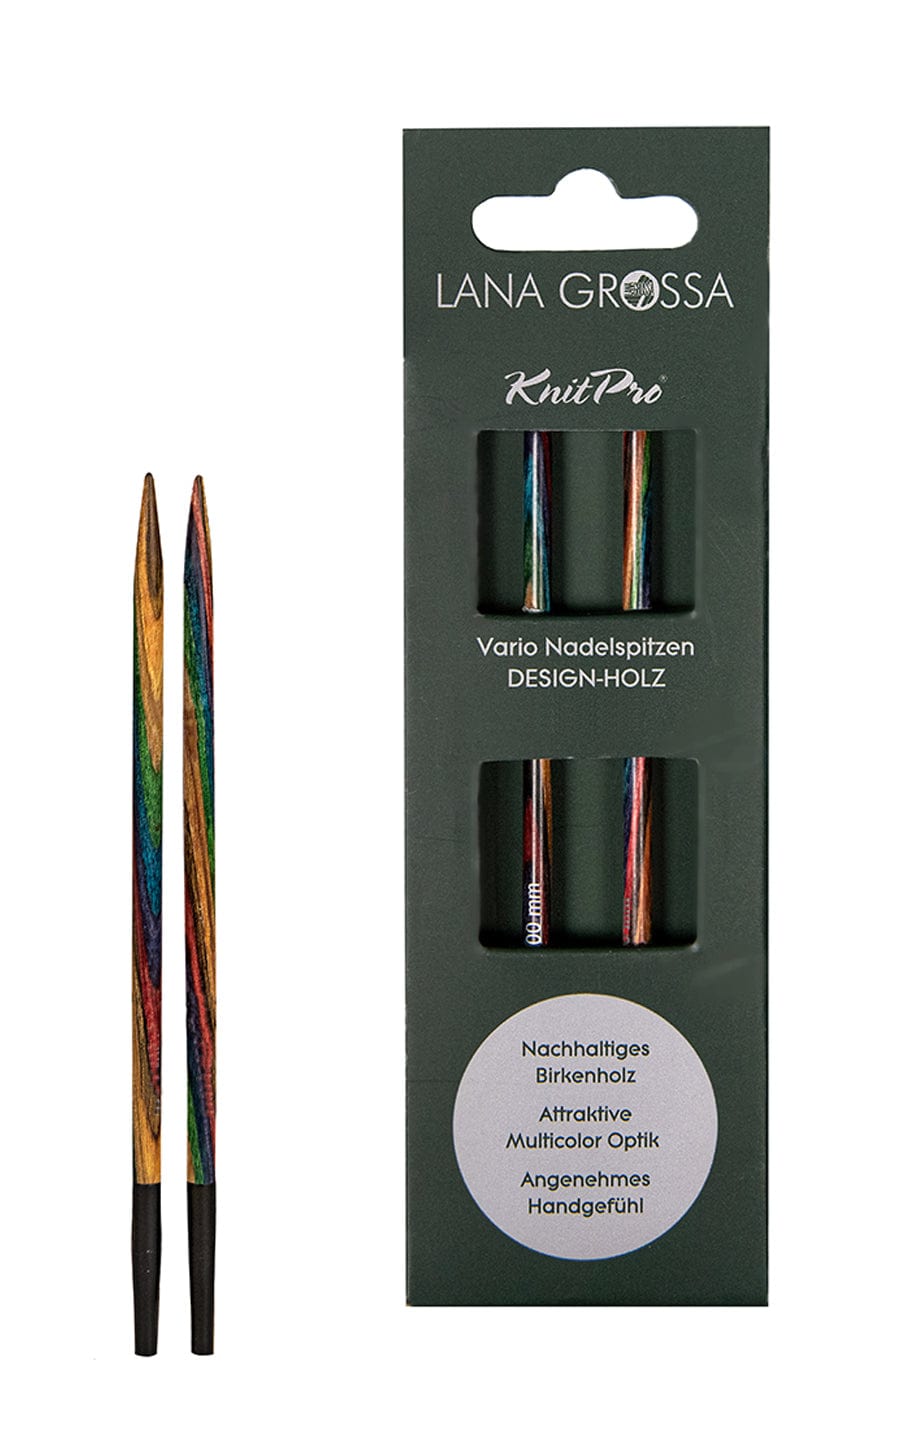 7,5 mm Nadelspitze Vario aus Holz - neue Verpackung von LANA GROSSA jetzt online kaufen bei OONIQUE